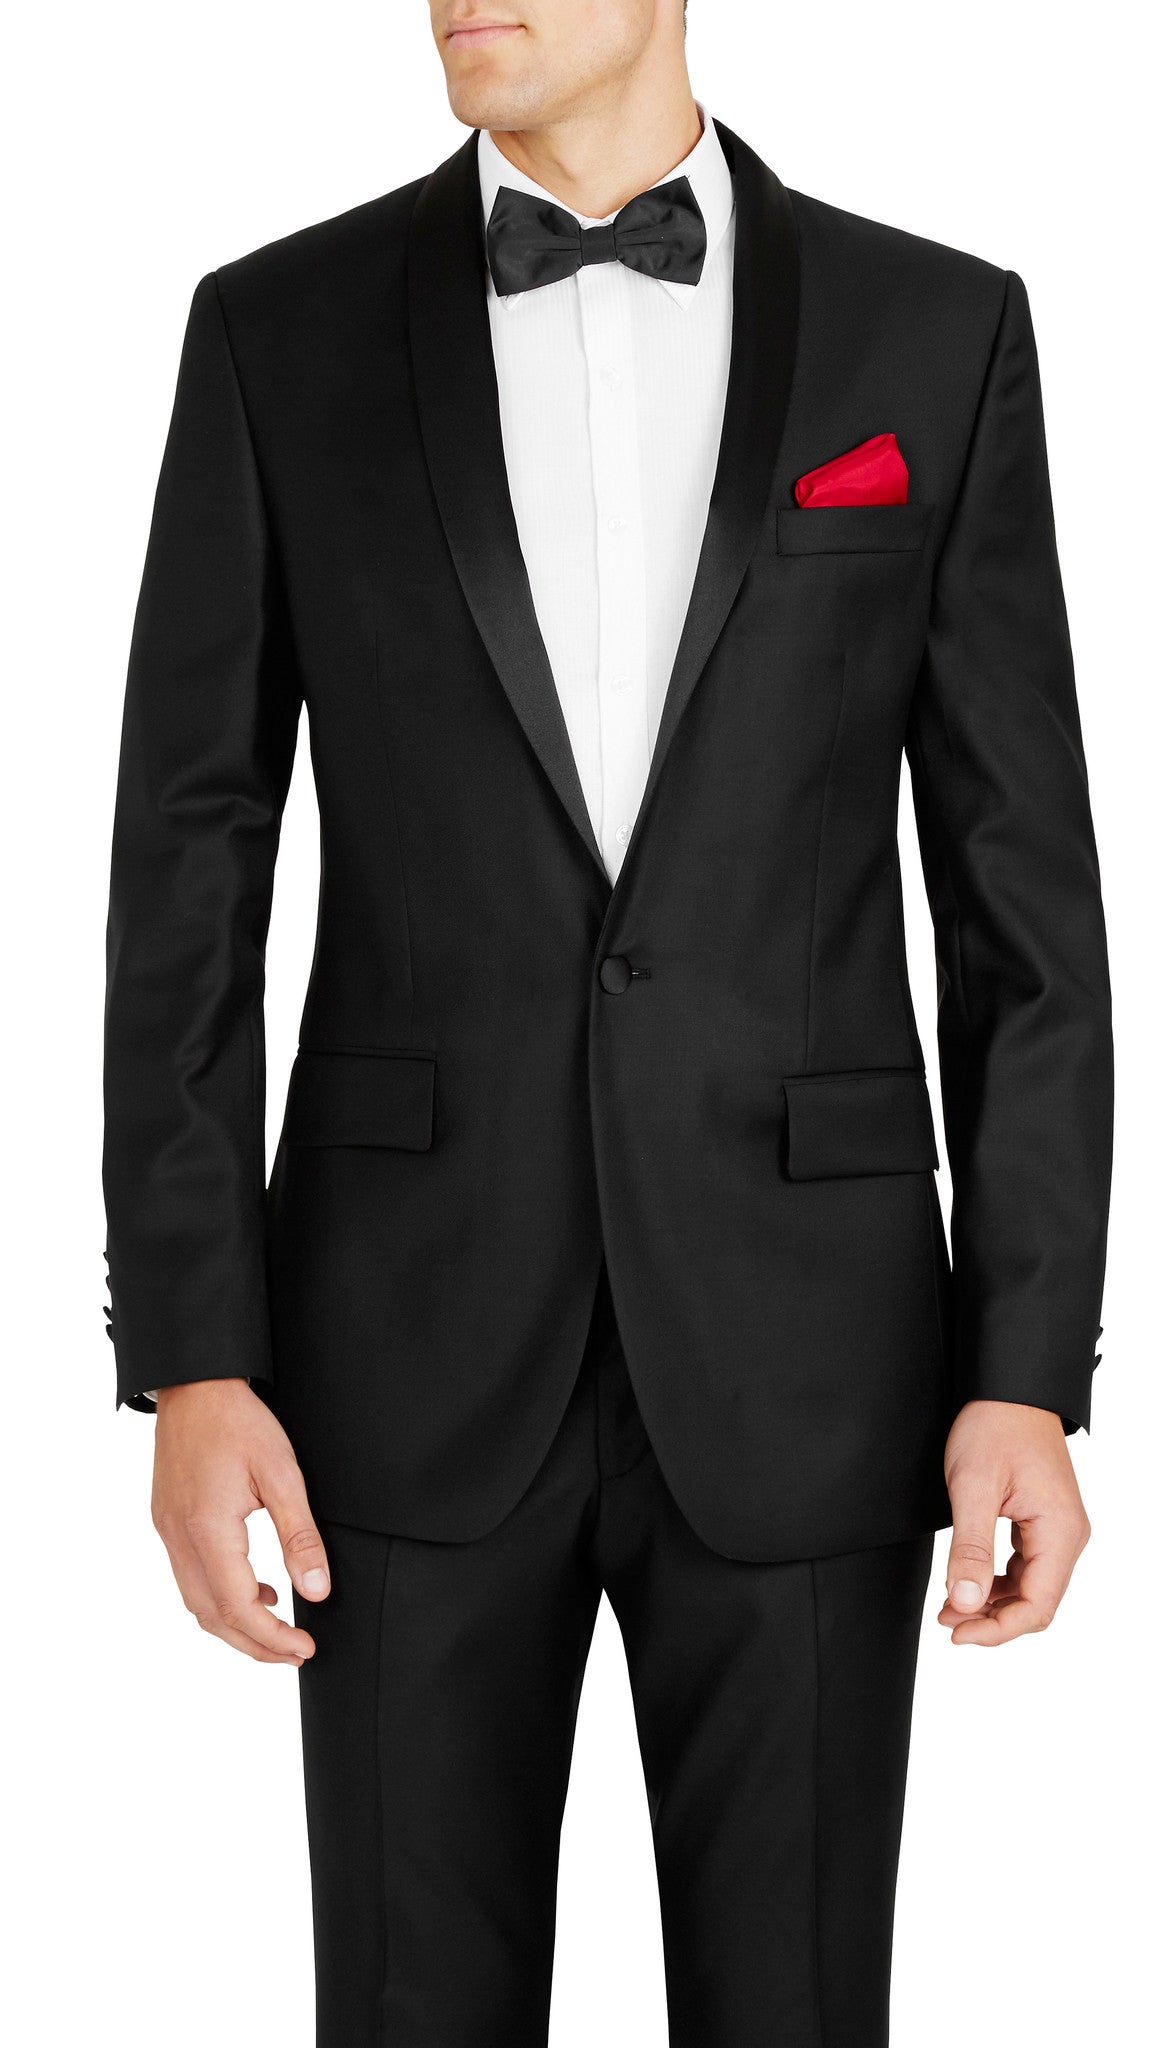 Senator Black Dinner Suit Tuxedo | Ron Bennett Online